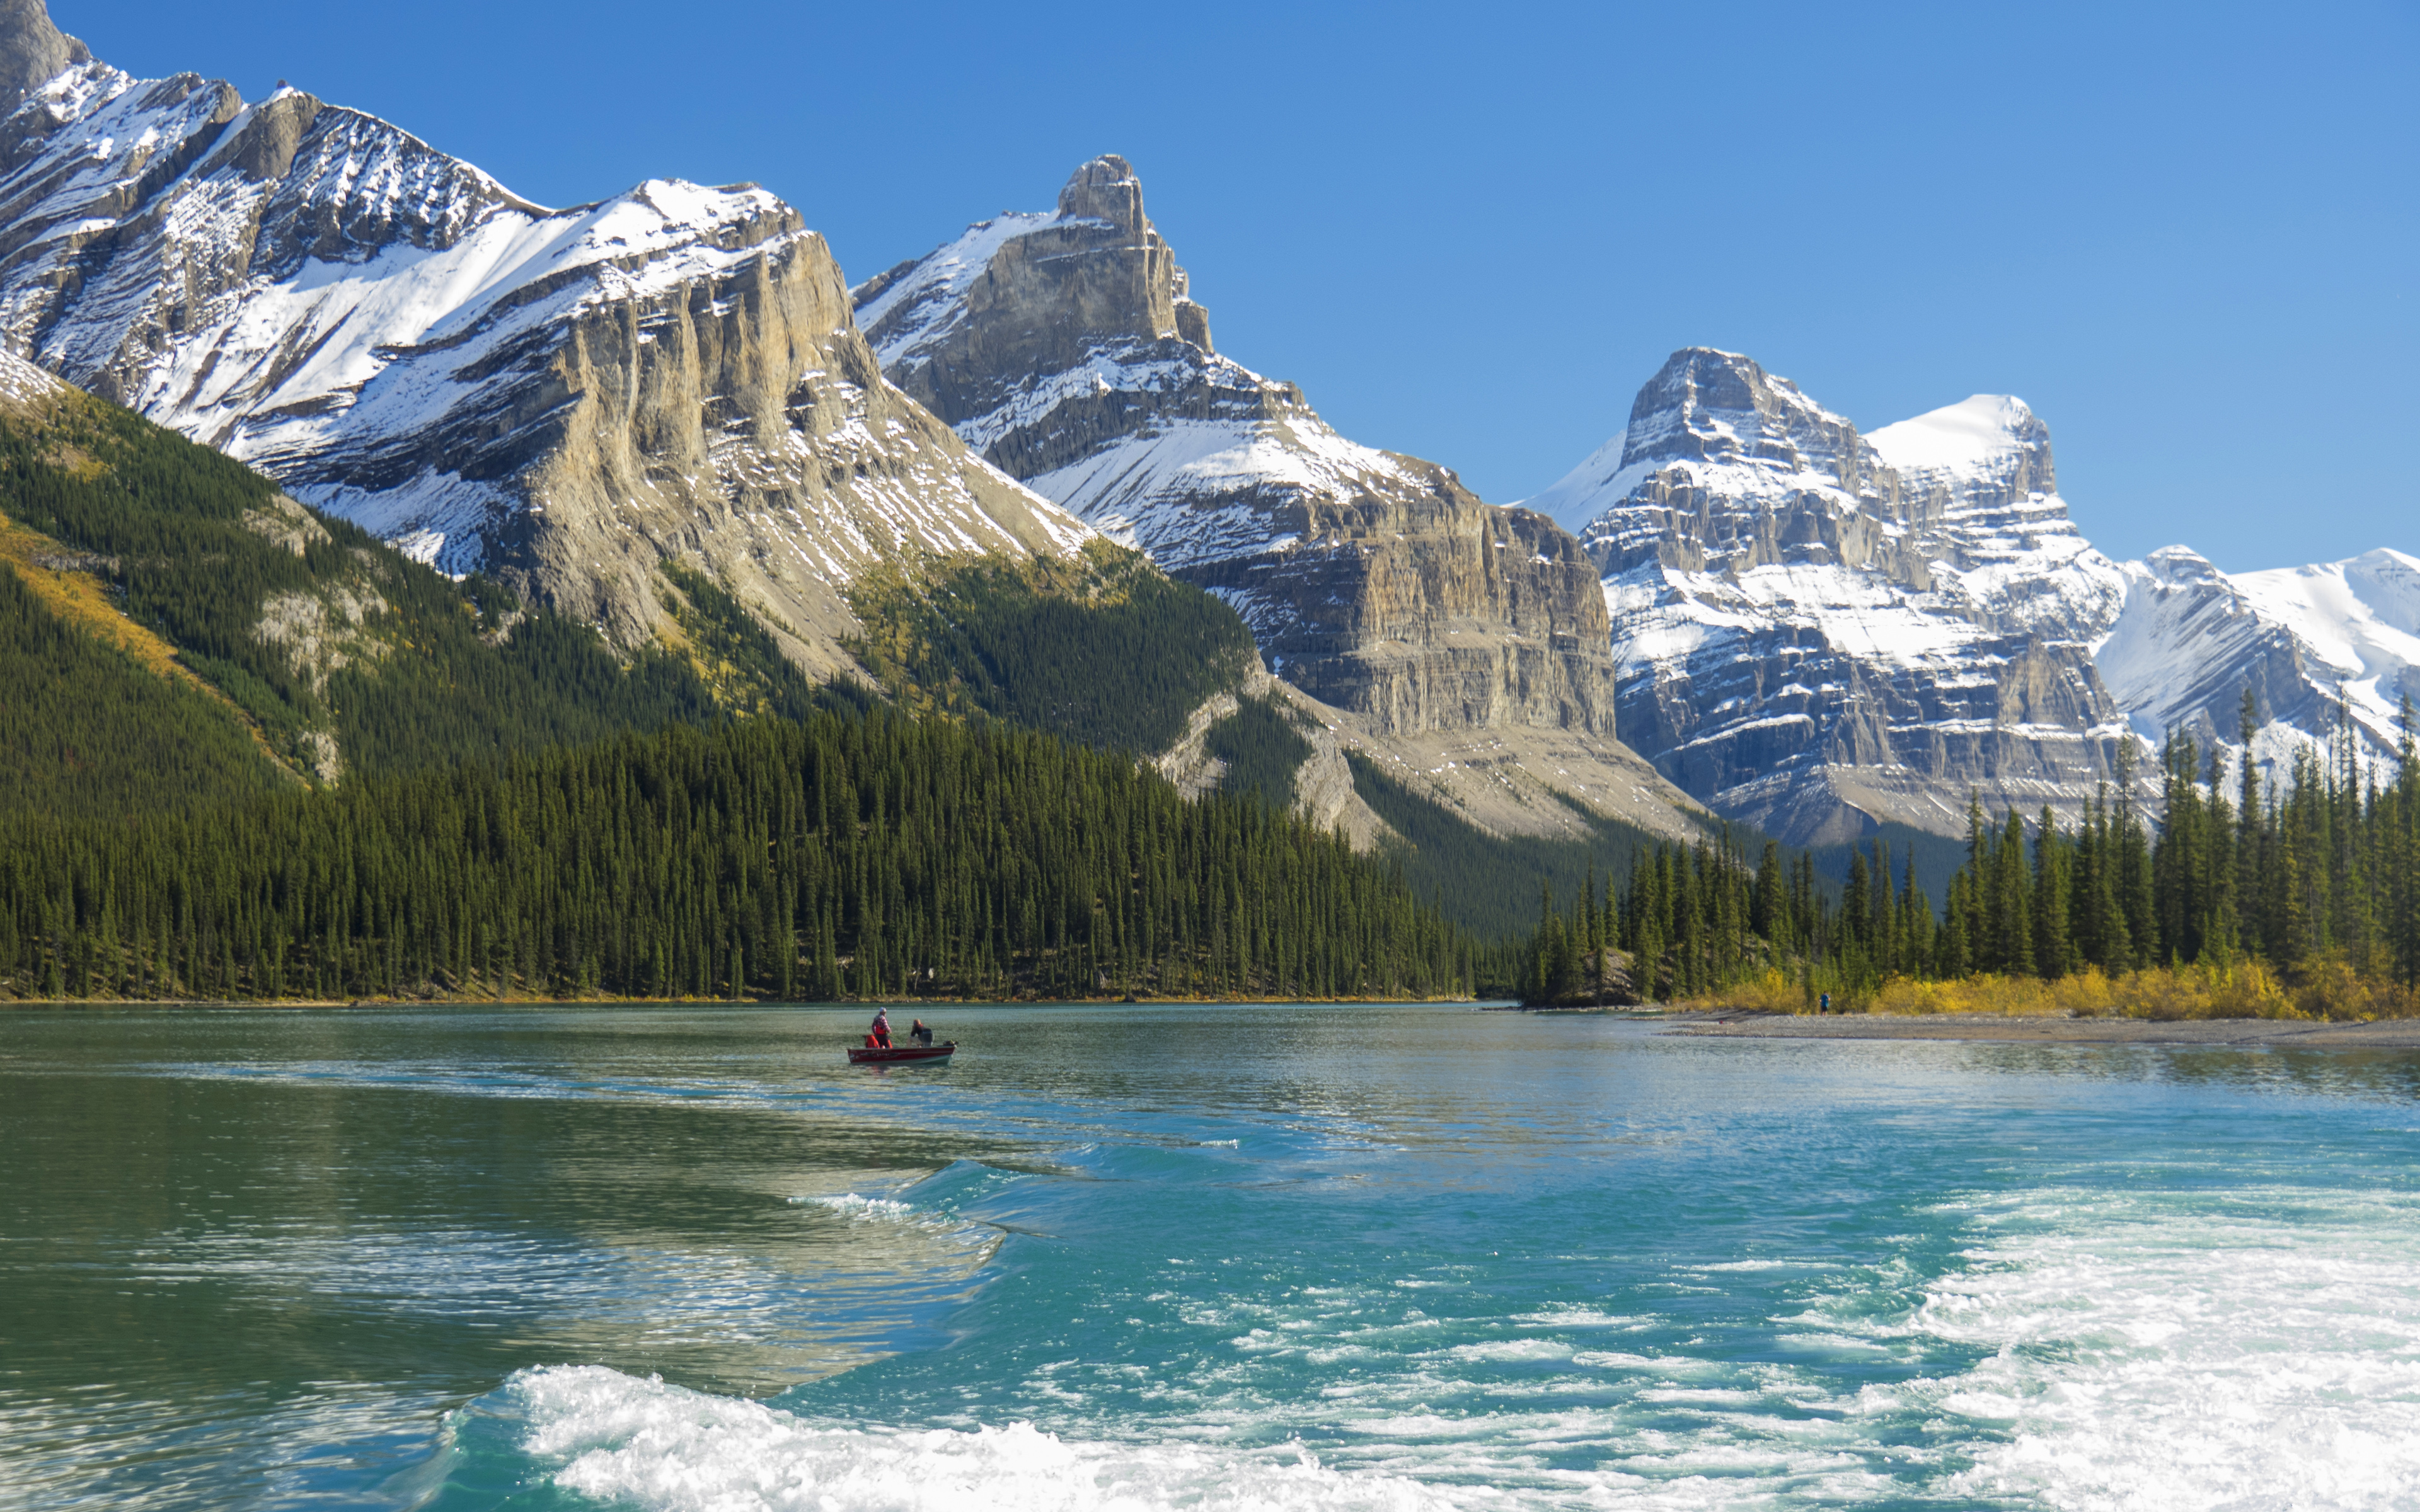 Download wallpapers Maligne Lake, 4k, mountains, canadian landmarks